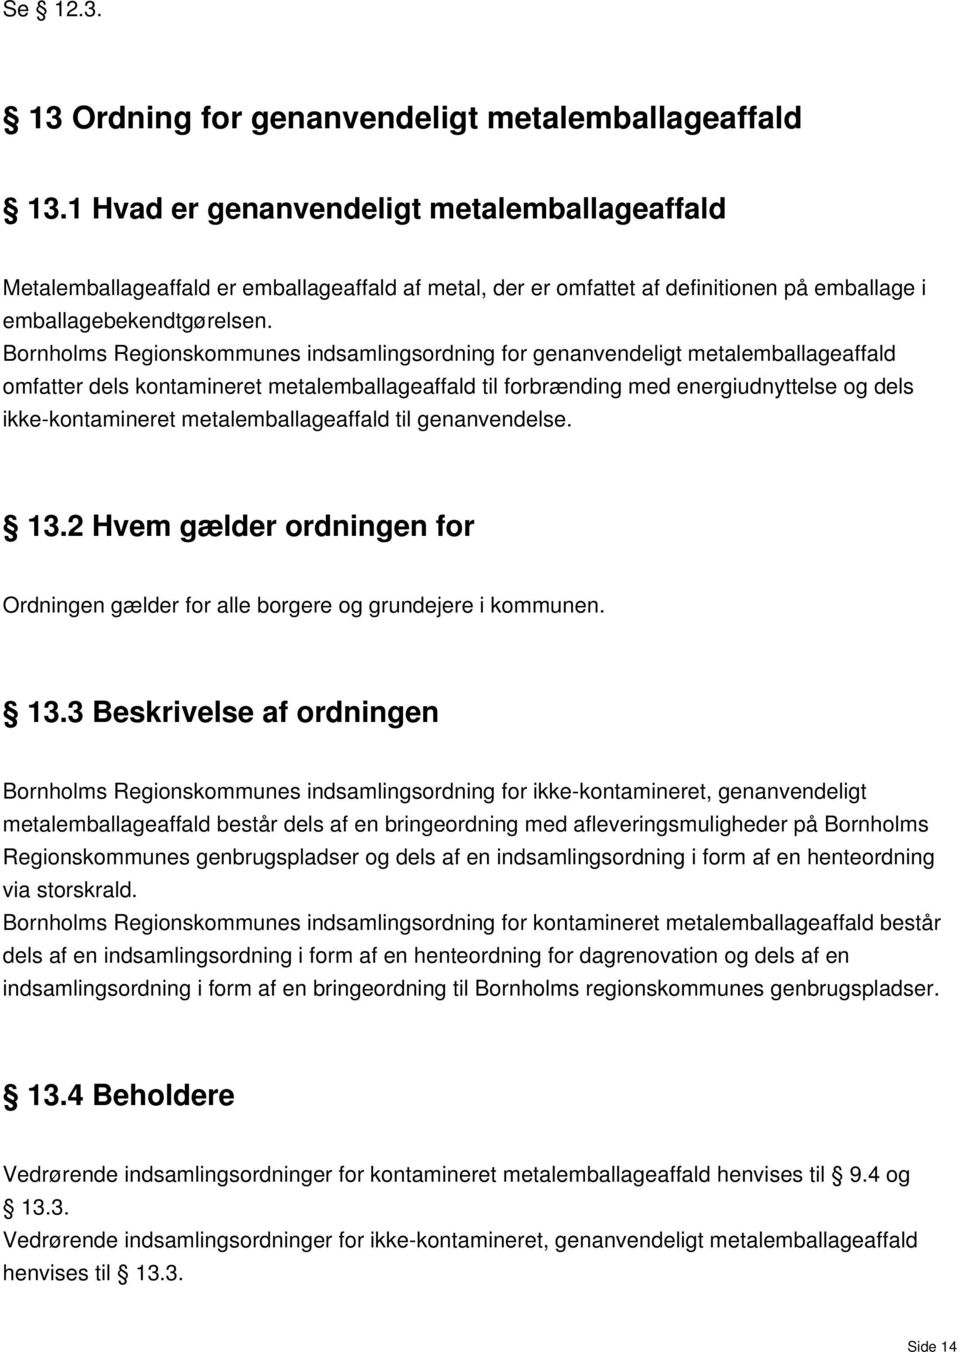 Bornholms Regionskommunes indsamlingsordning for genanvendeligt metalemballageaffald omfatter dels kontamineret metalemballageaffald til forbrænding med energiudnyttelse og dels ikke-kontamineret